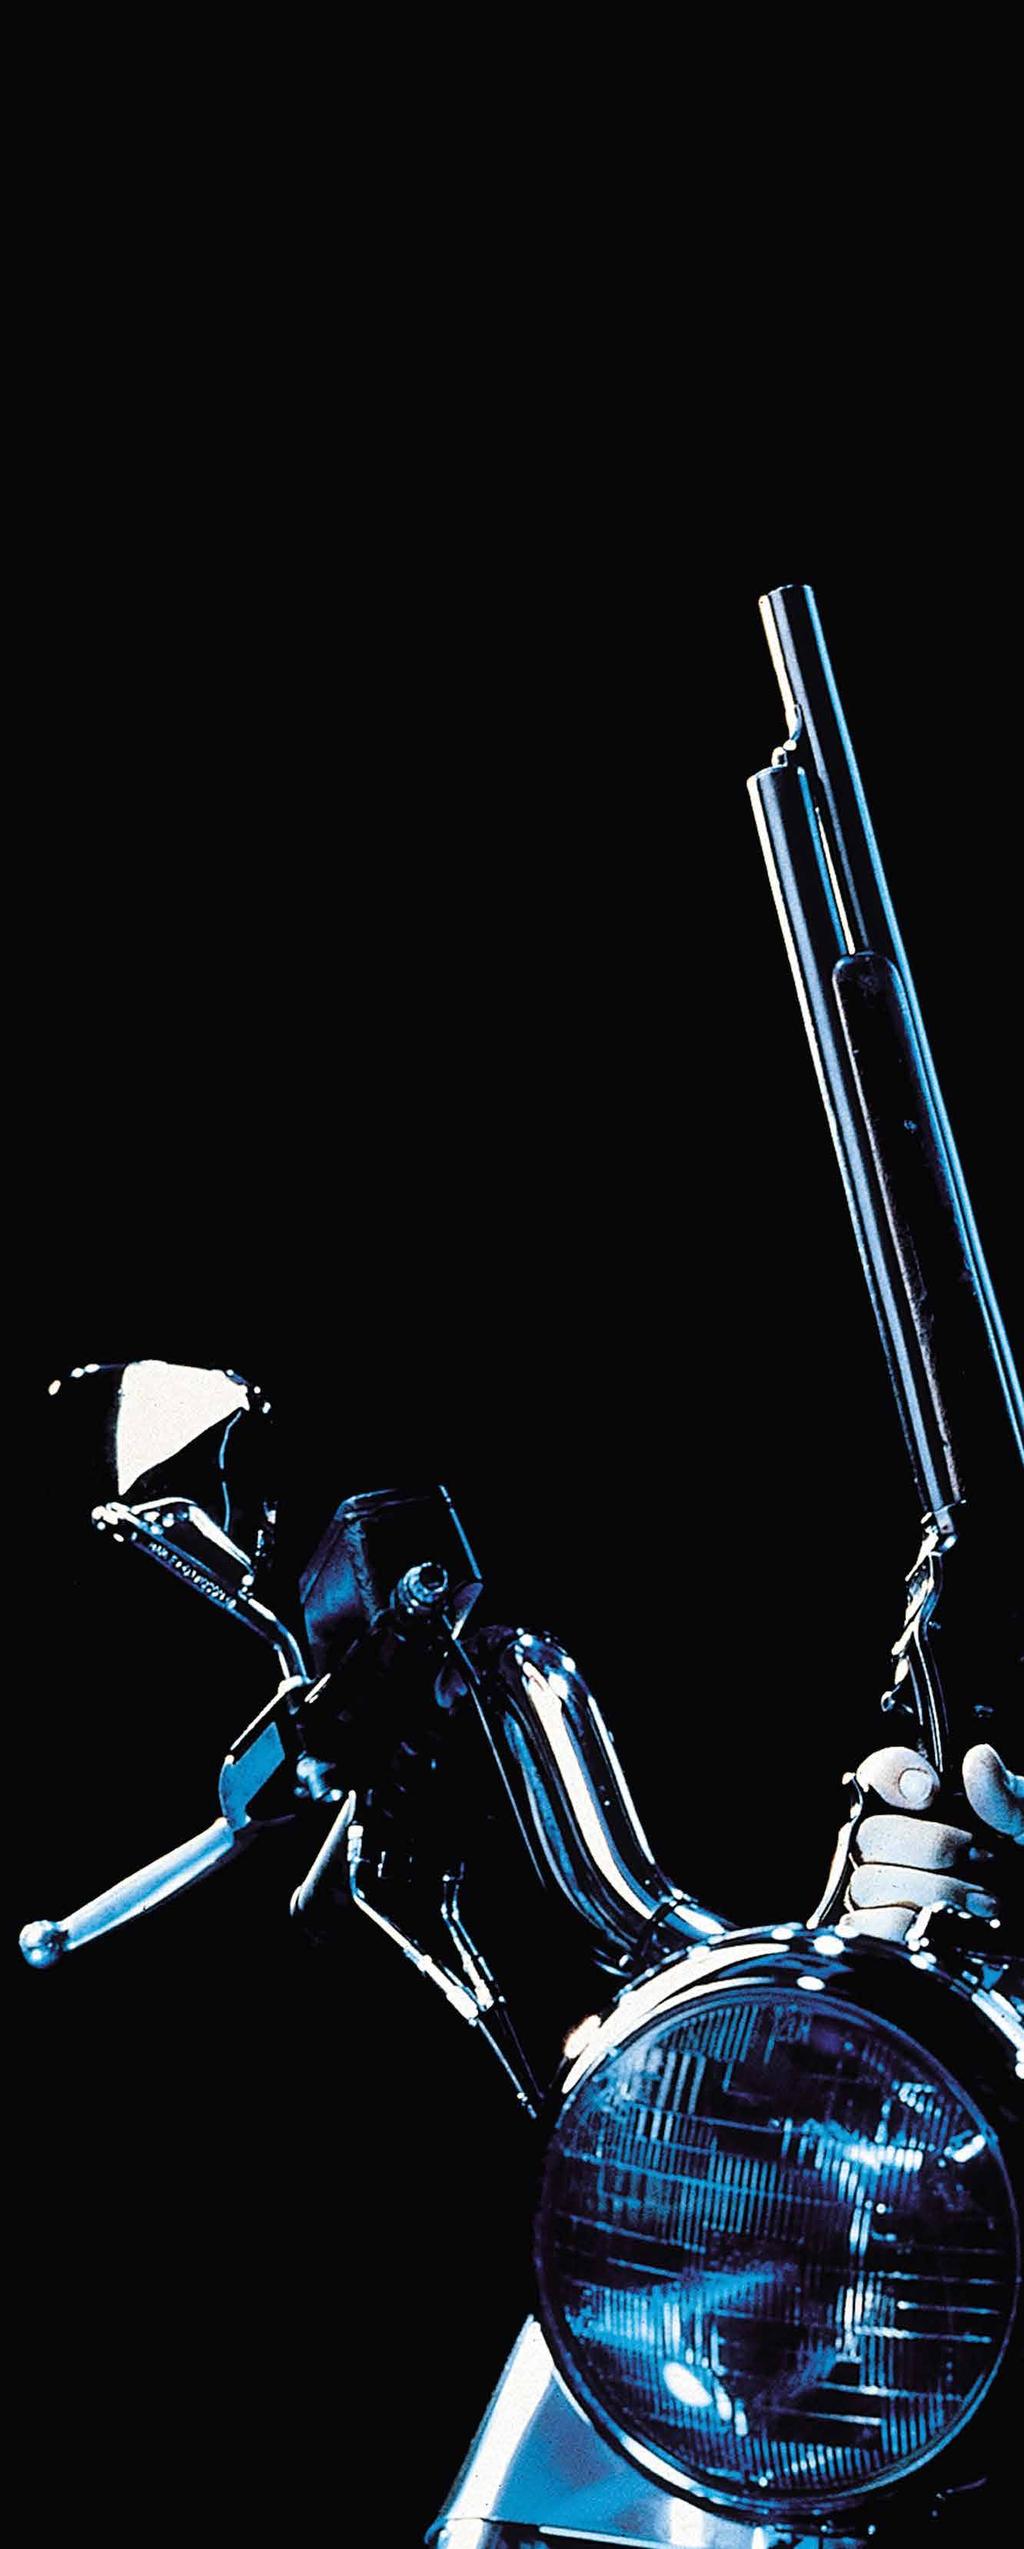 1989 erschien die erste Harley Davidson Fat Boy - knapp ein Jahr bevor Terminator 2 - Judgement Day in die Kinos kam.